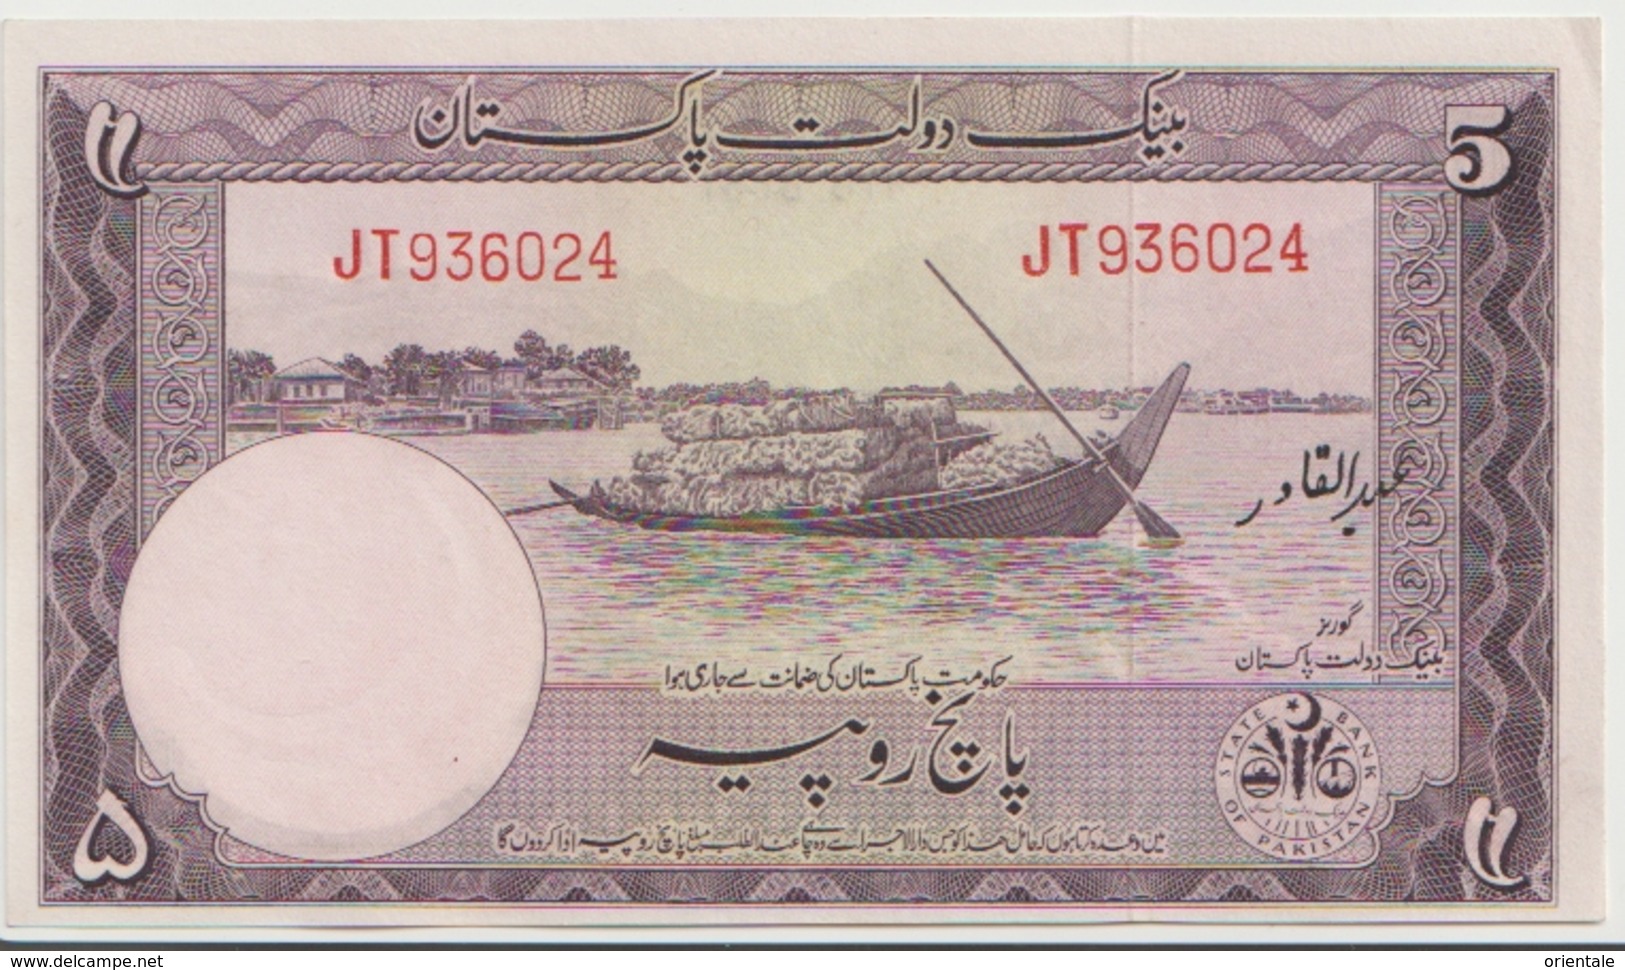 PAKISTAN P. 12 5 R 1955 UNC - Pakistán